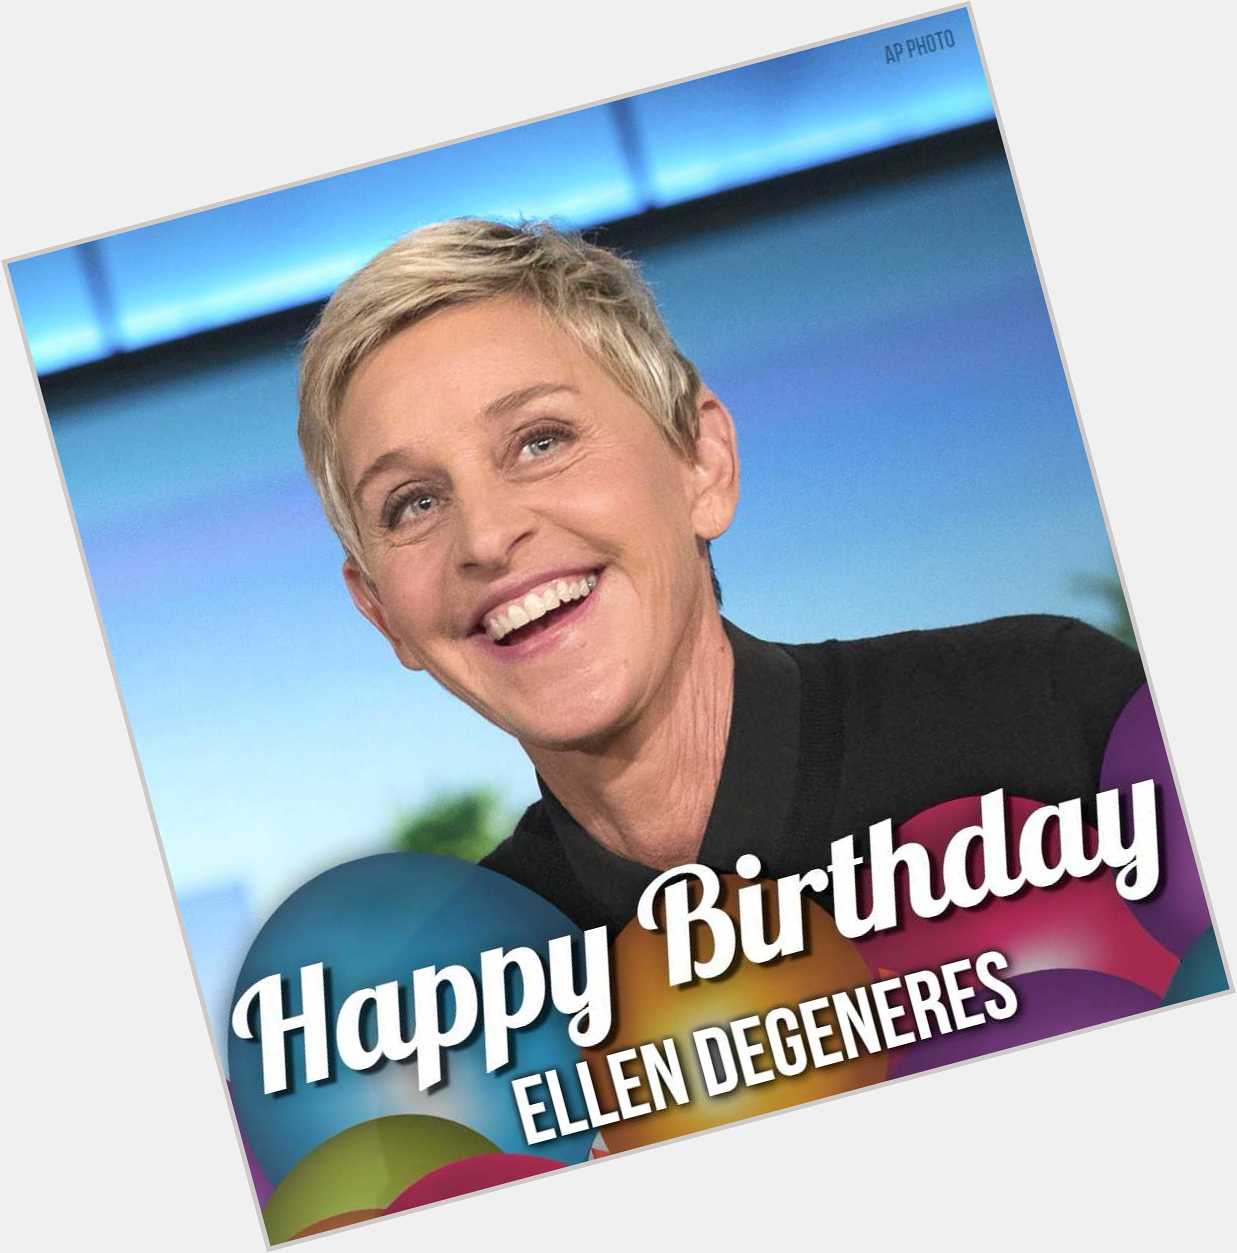 Happy 60th birthday to Ellen DeGeneres!! 